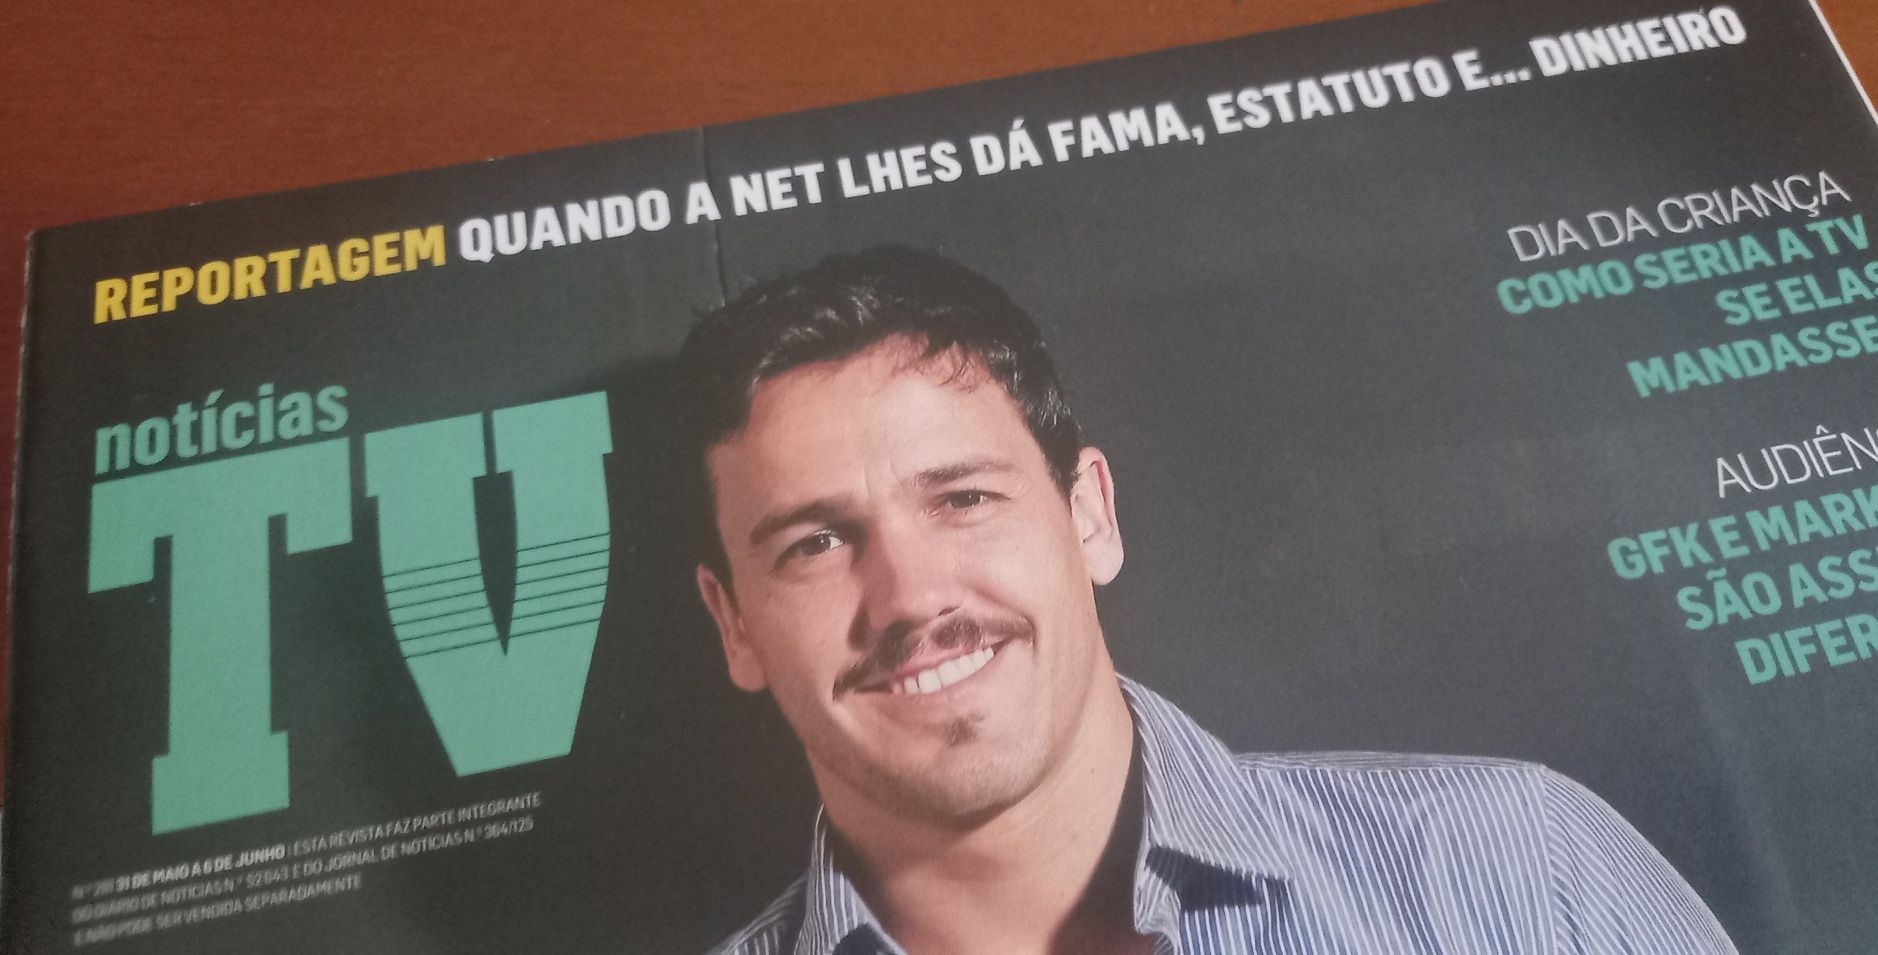 Fátima Lopes 2013, 2014 e 2018 revistas e recorte